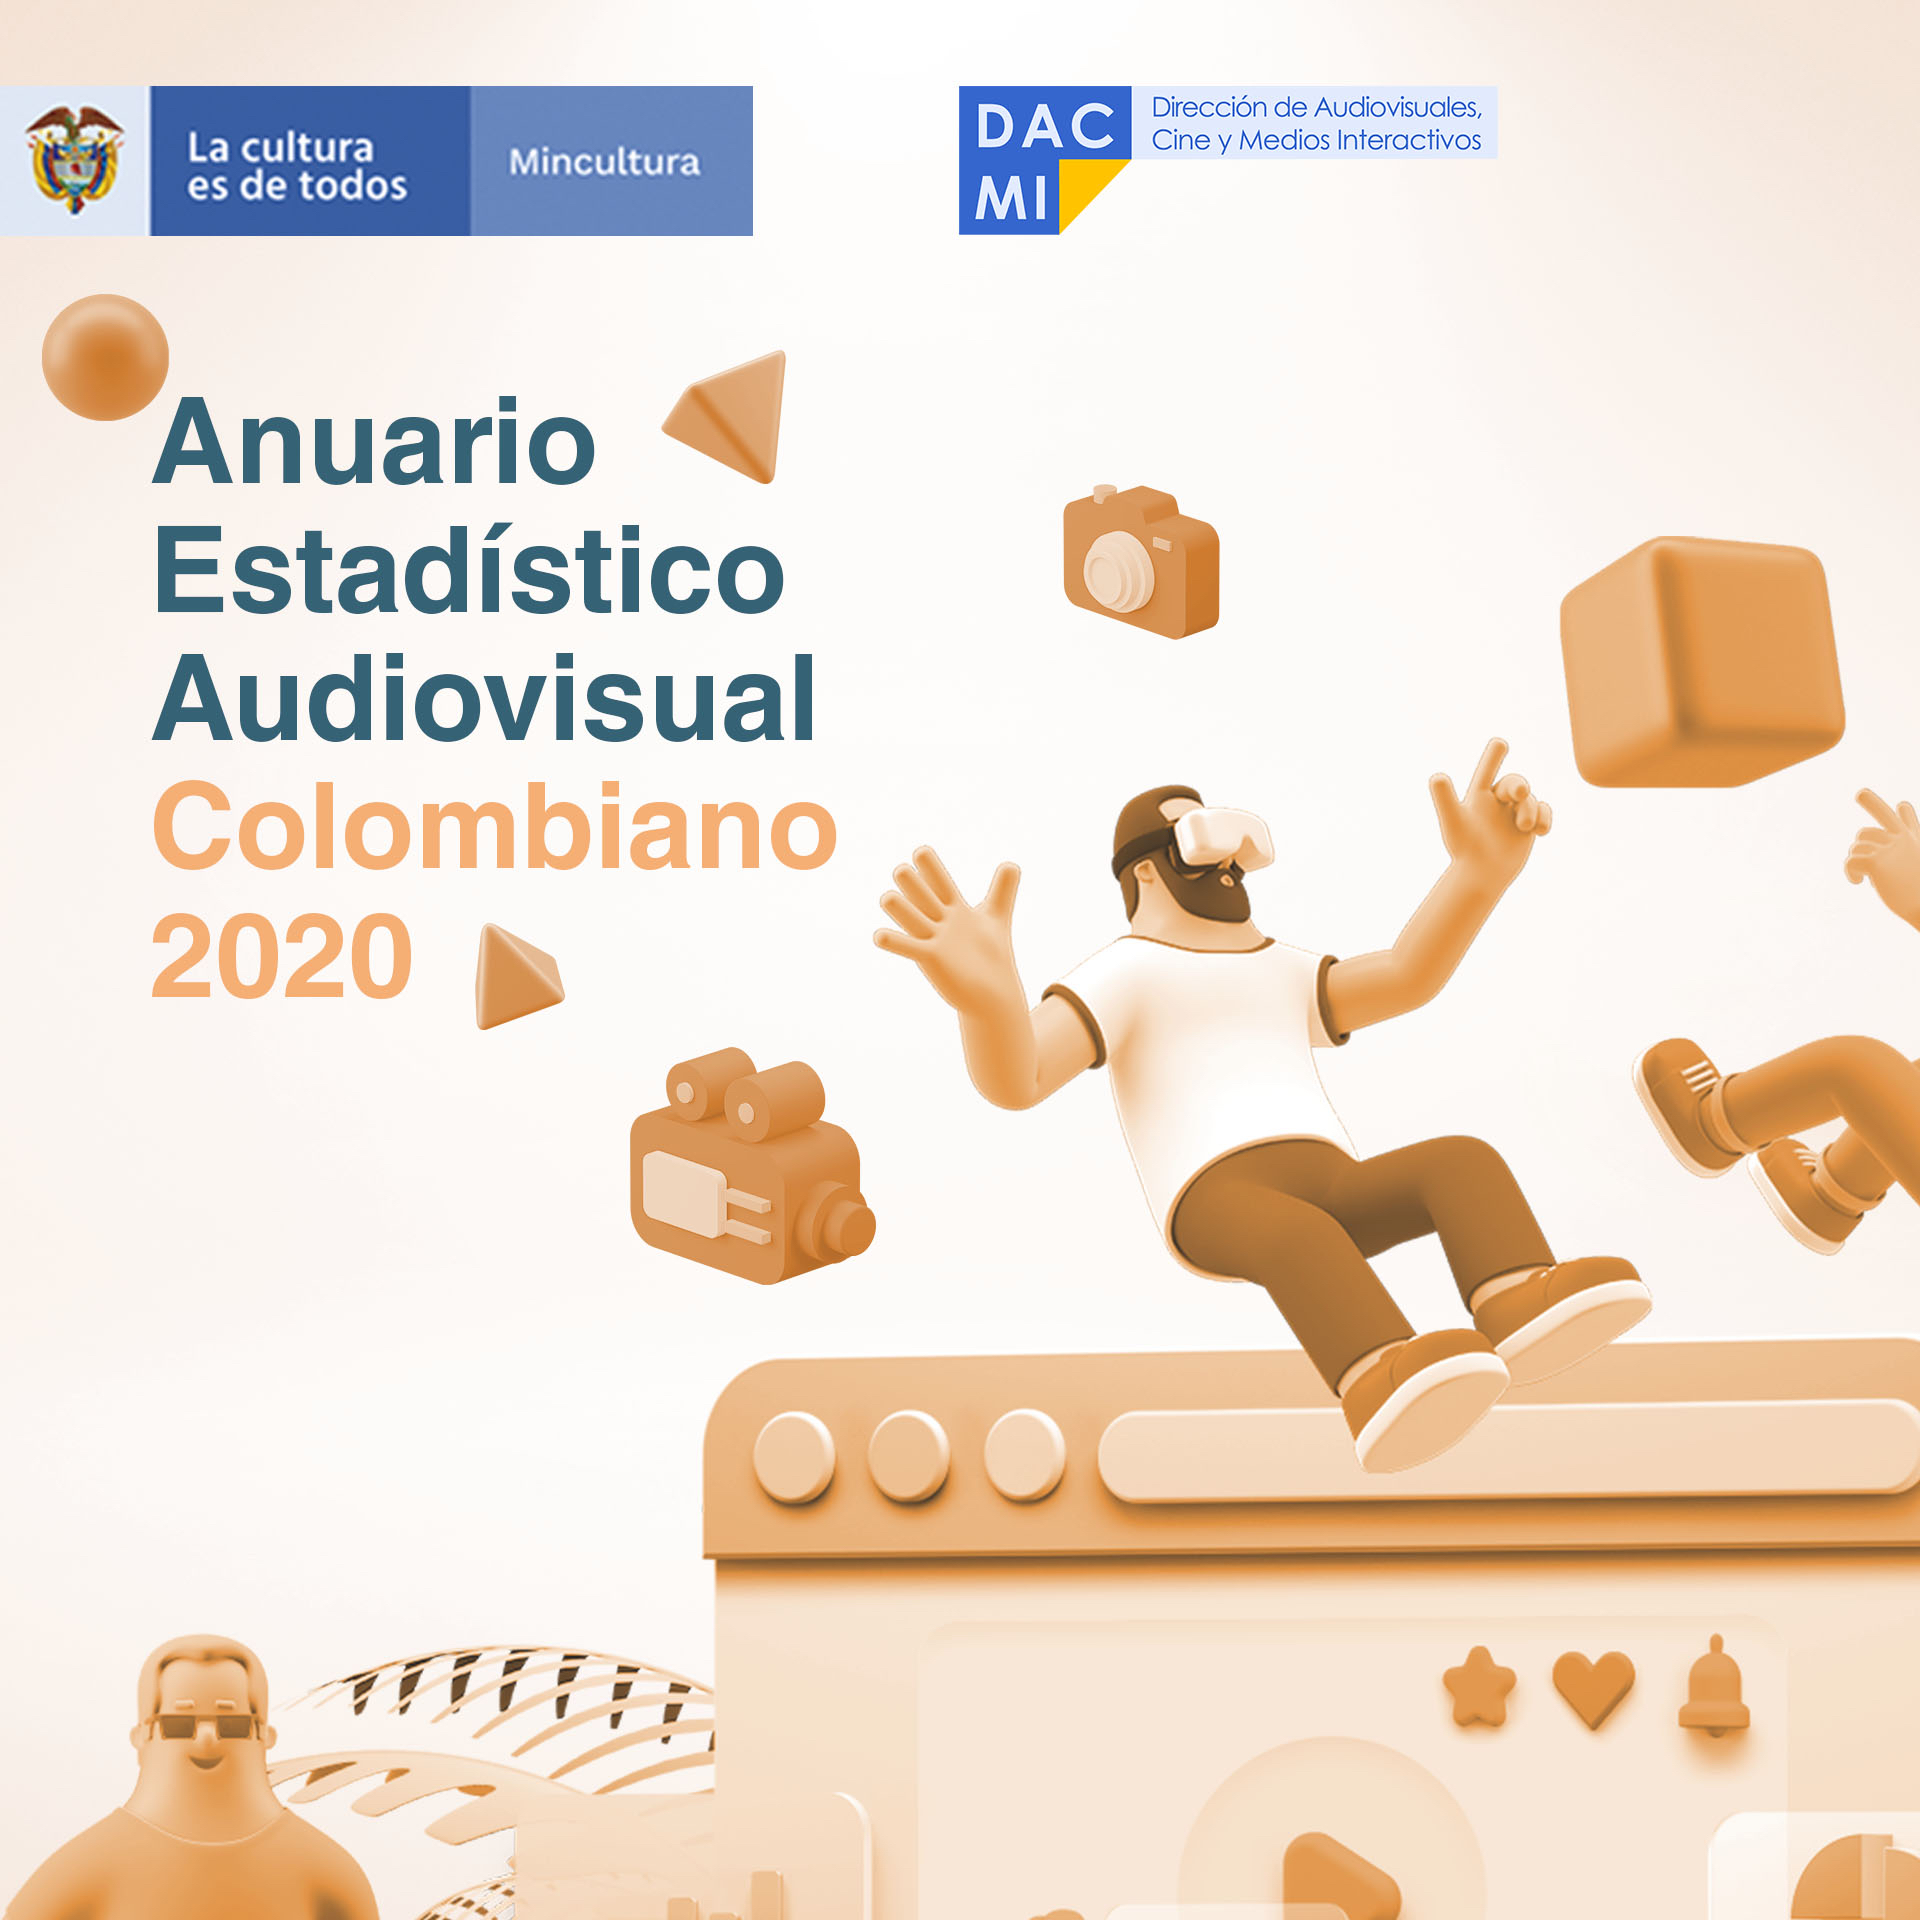 Anuario Estadistico Audiovisual Colombiano 2020